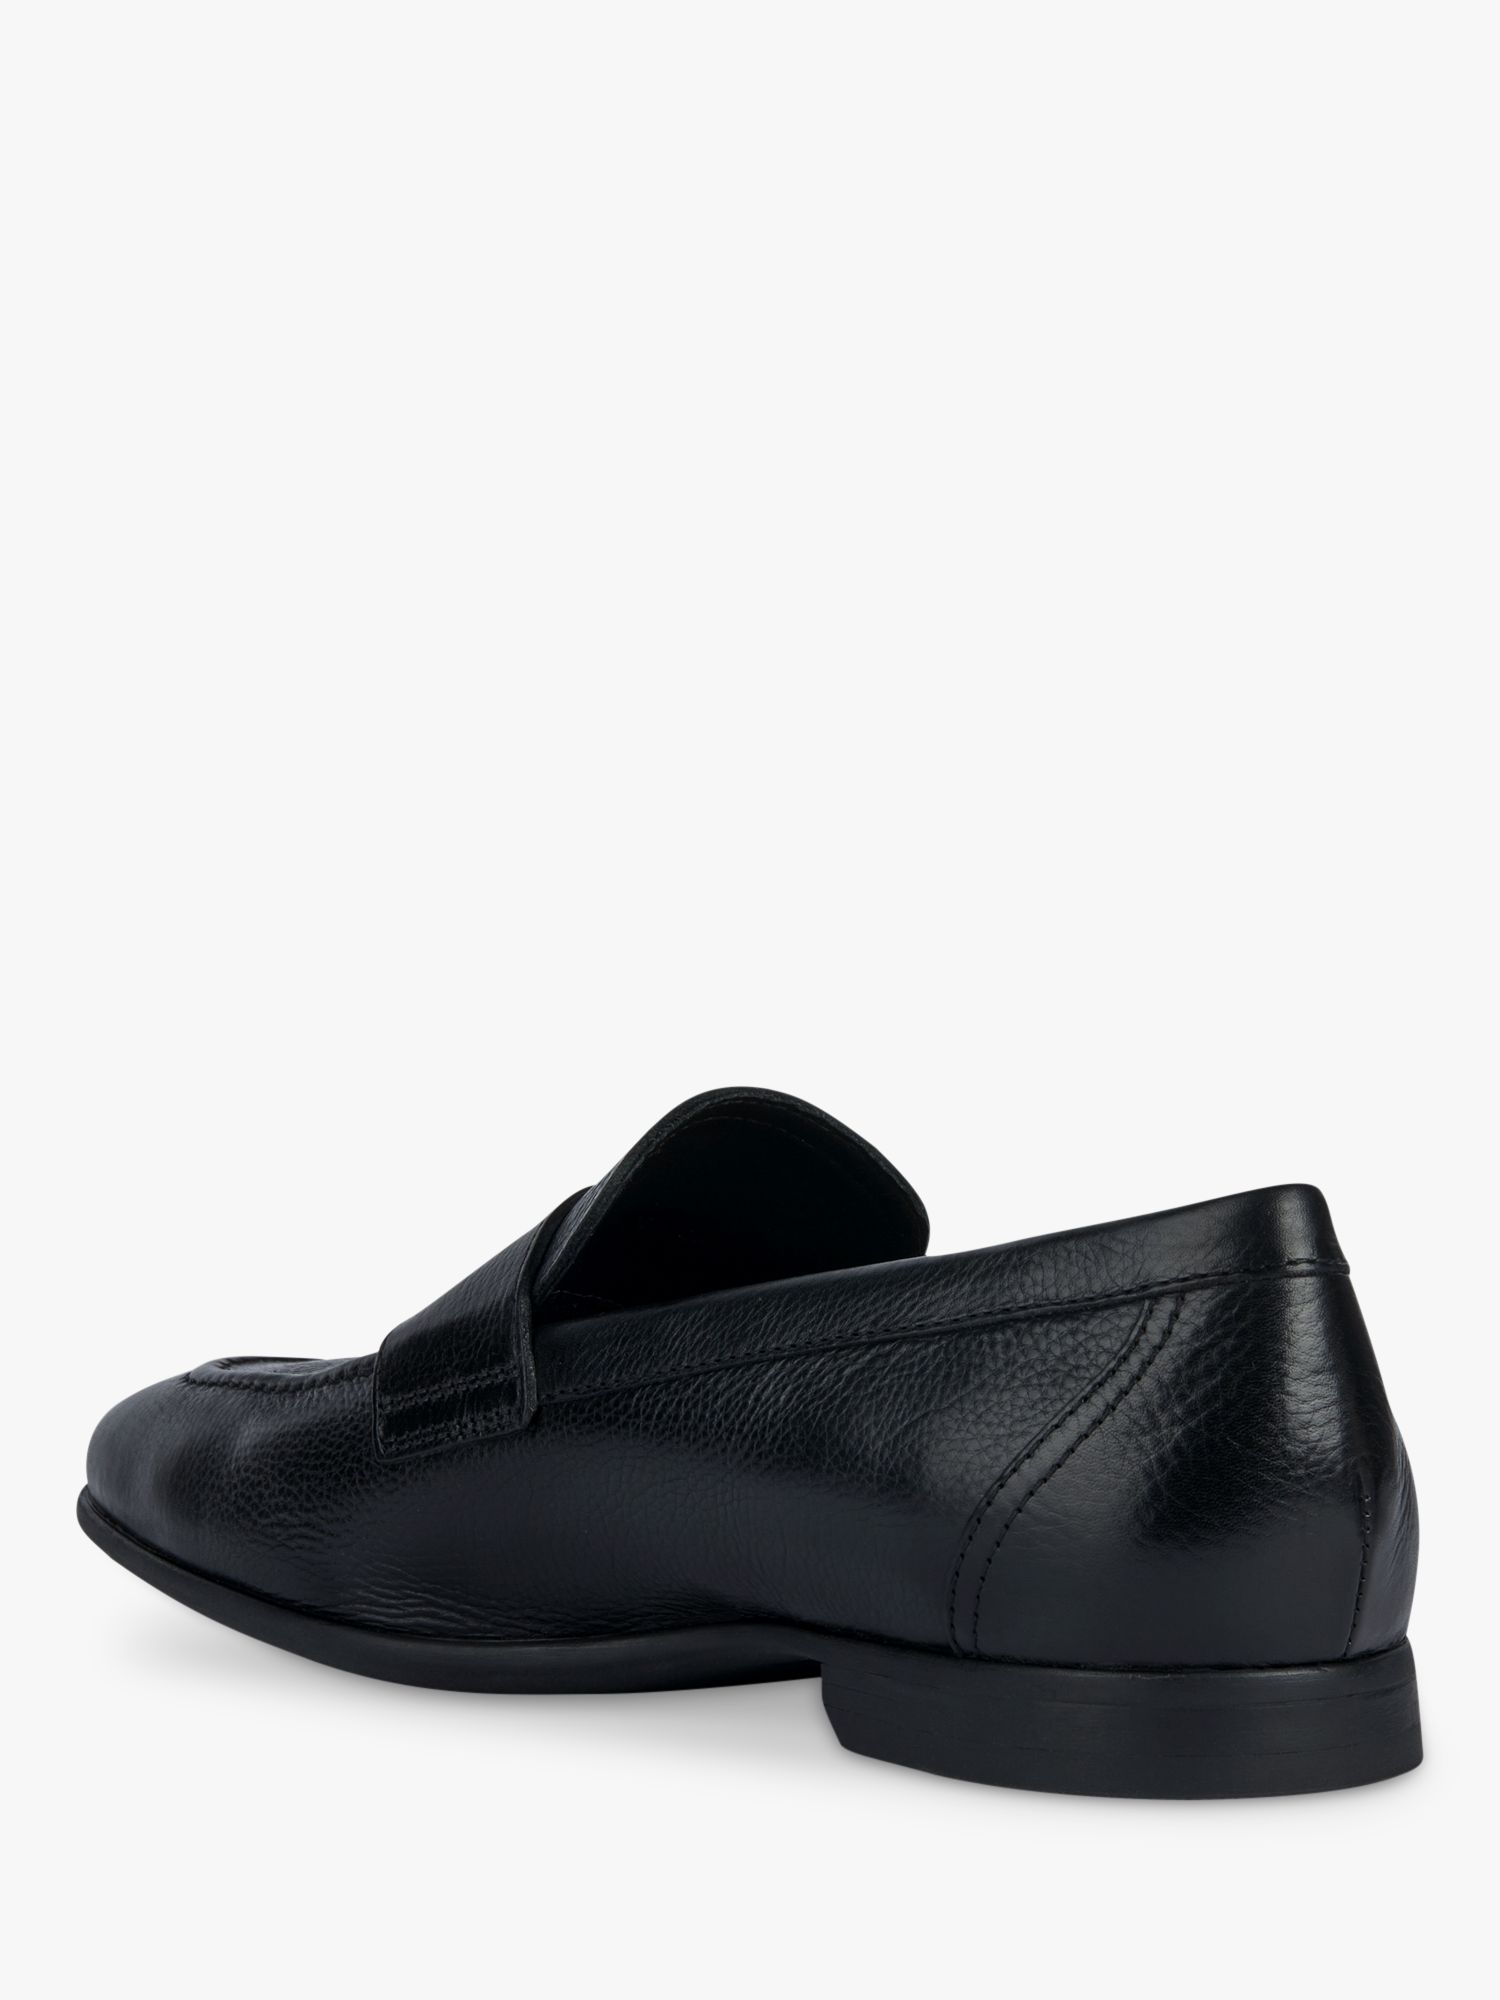 Geox Sapienza Classic Loafers, Black, EU39